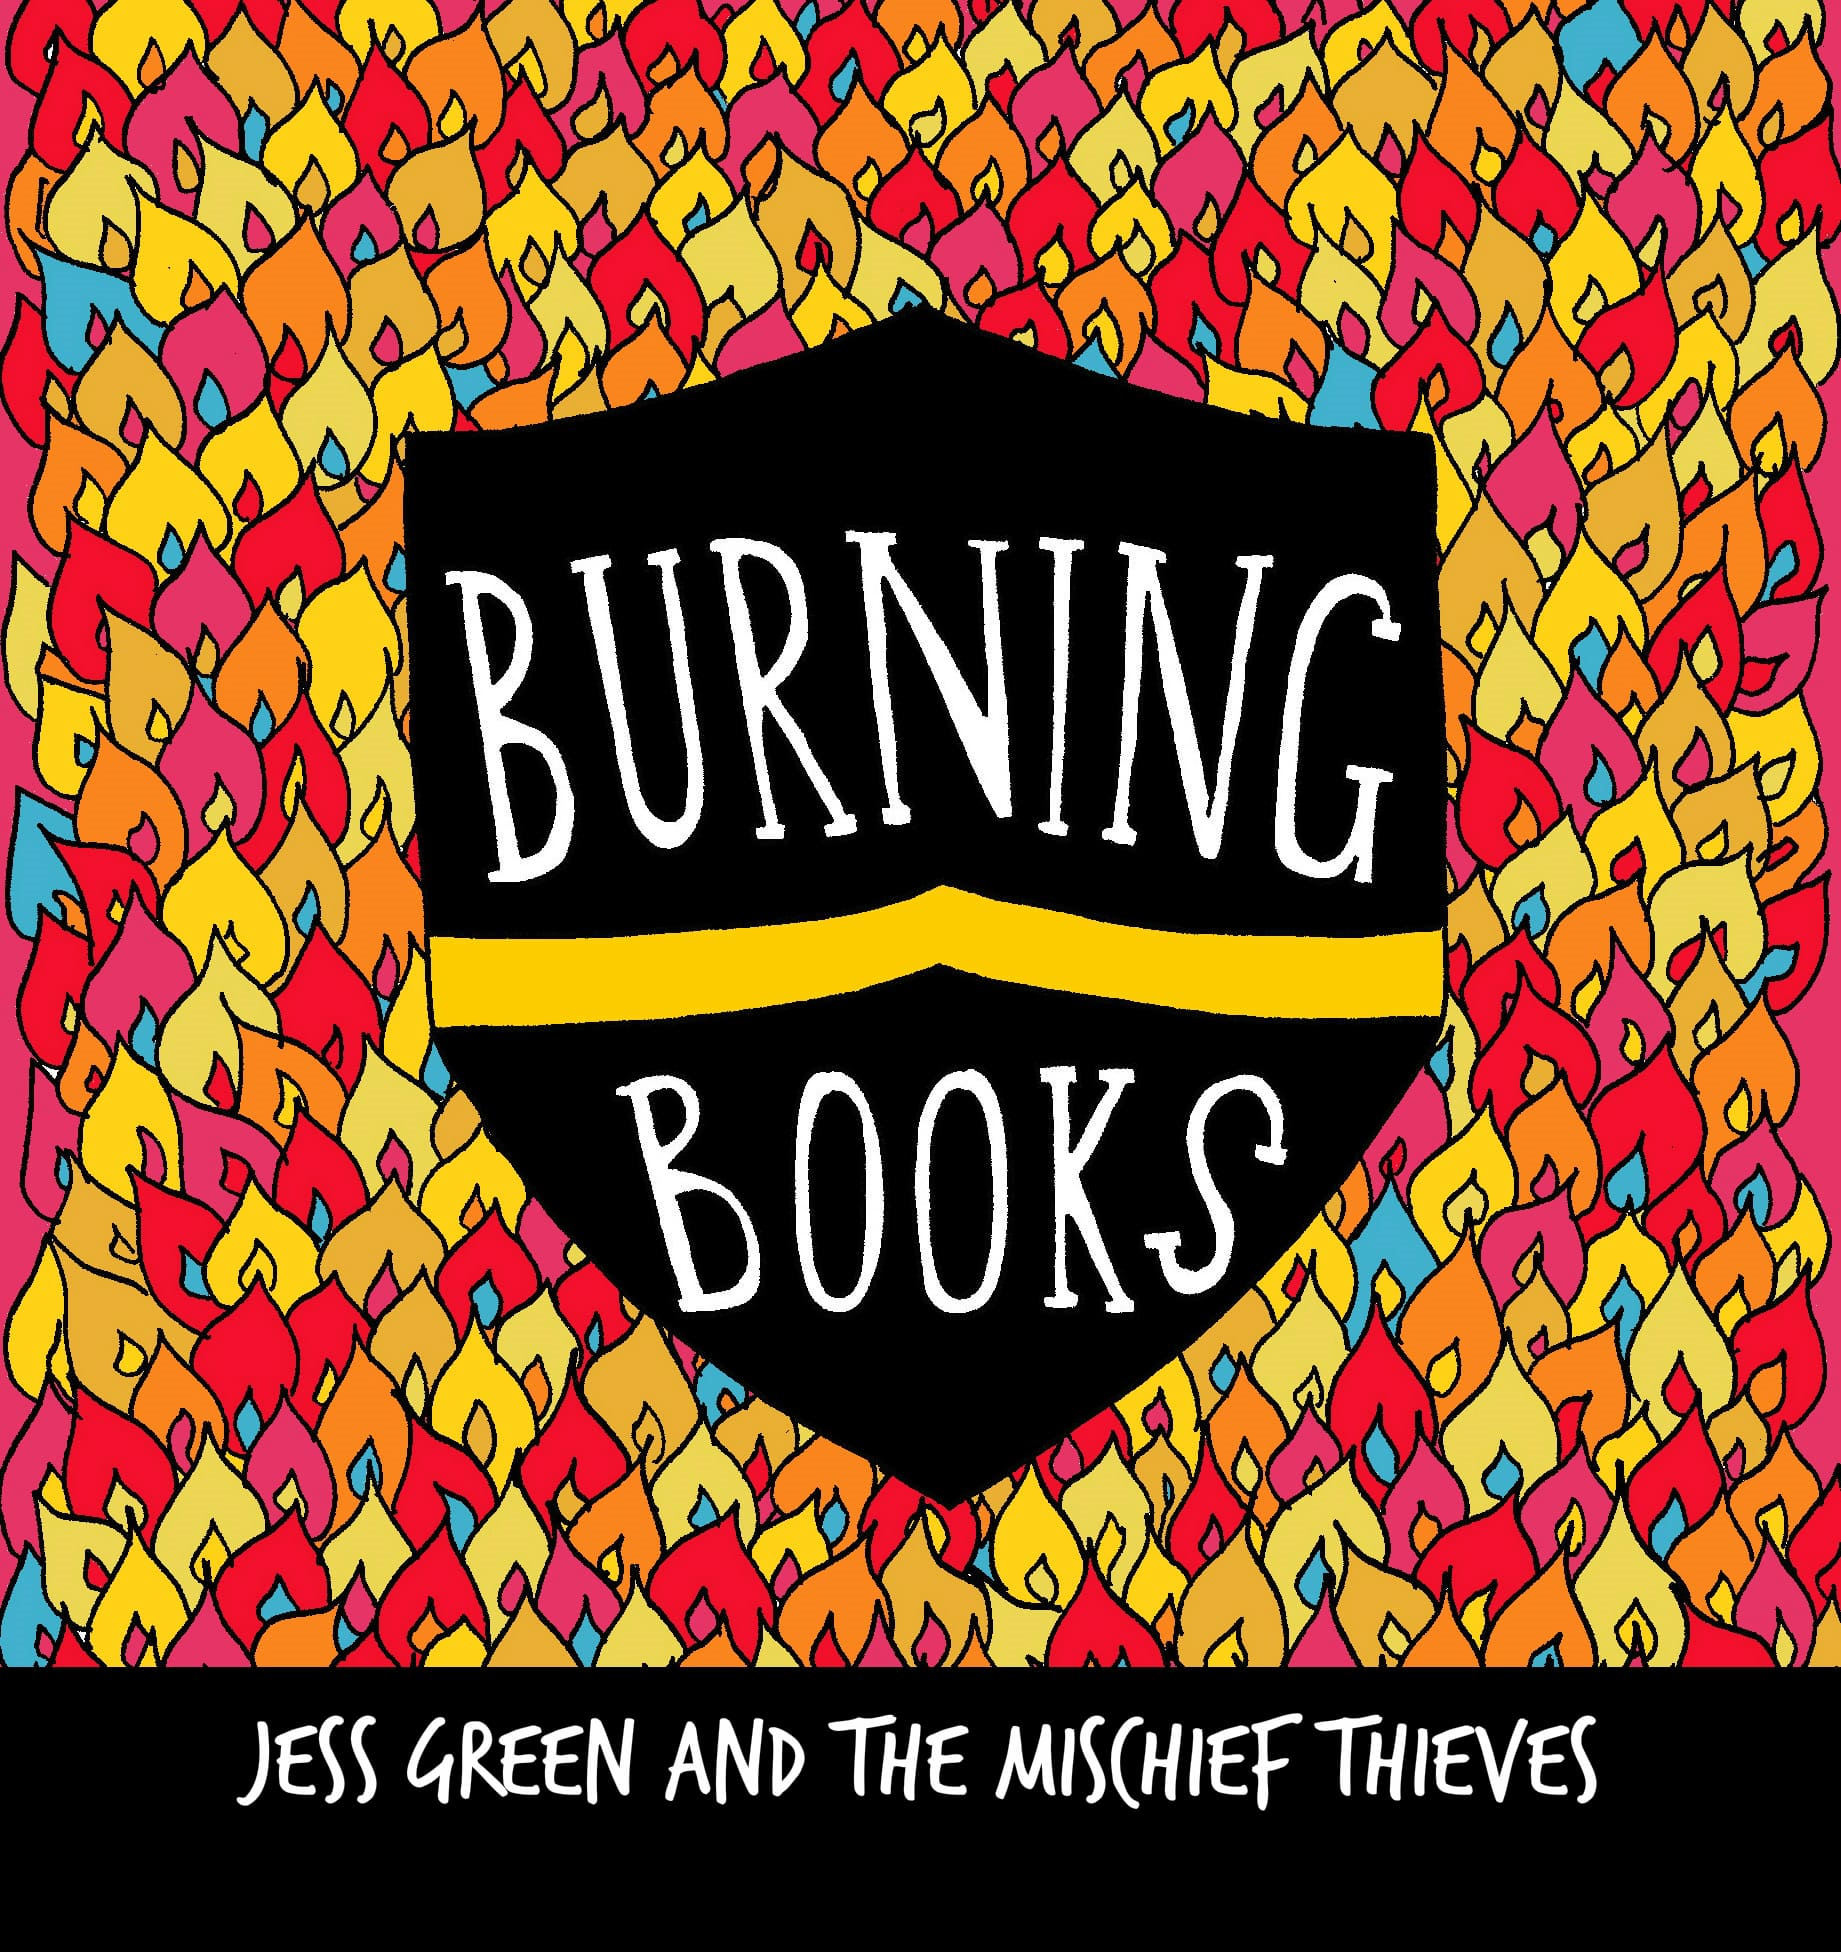 Banner Image for "Burning Books"